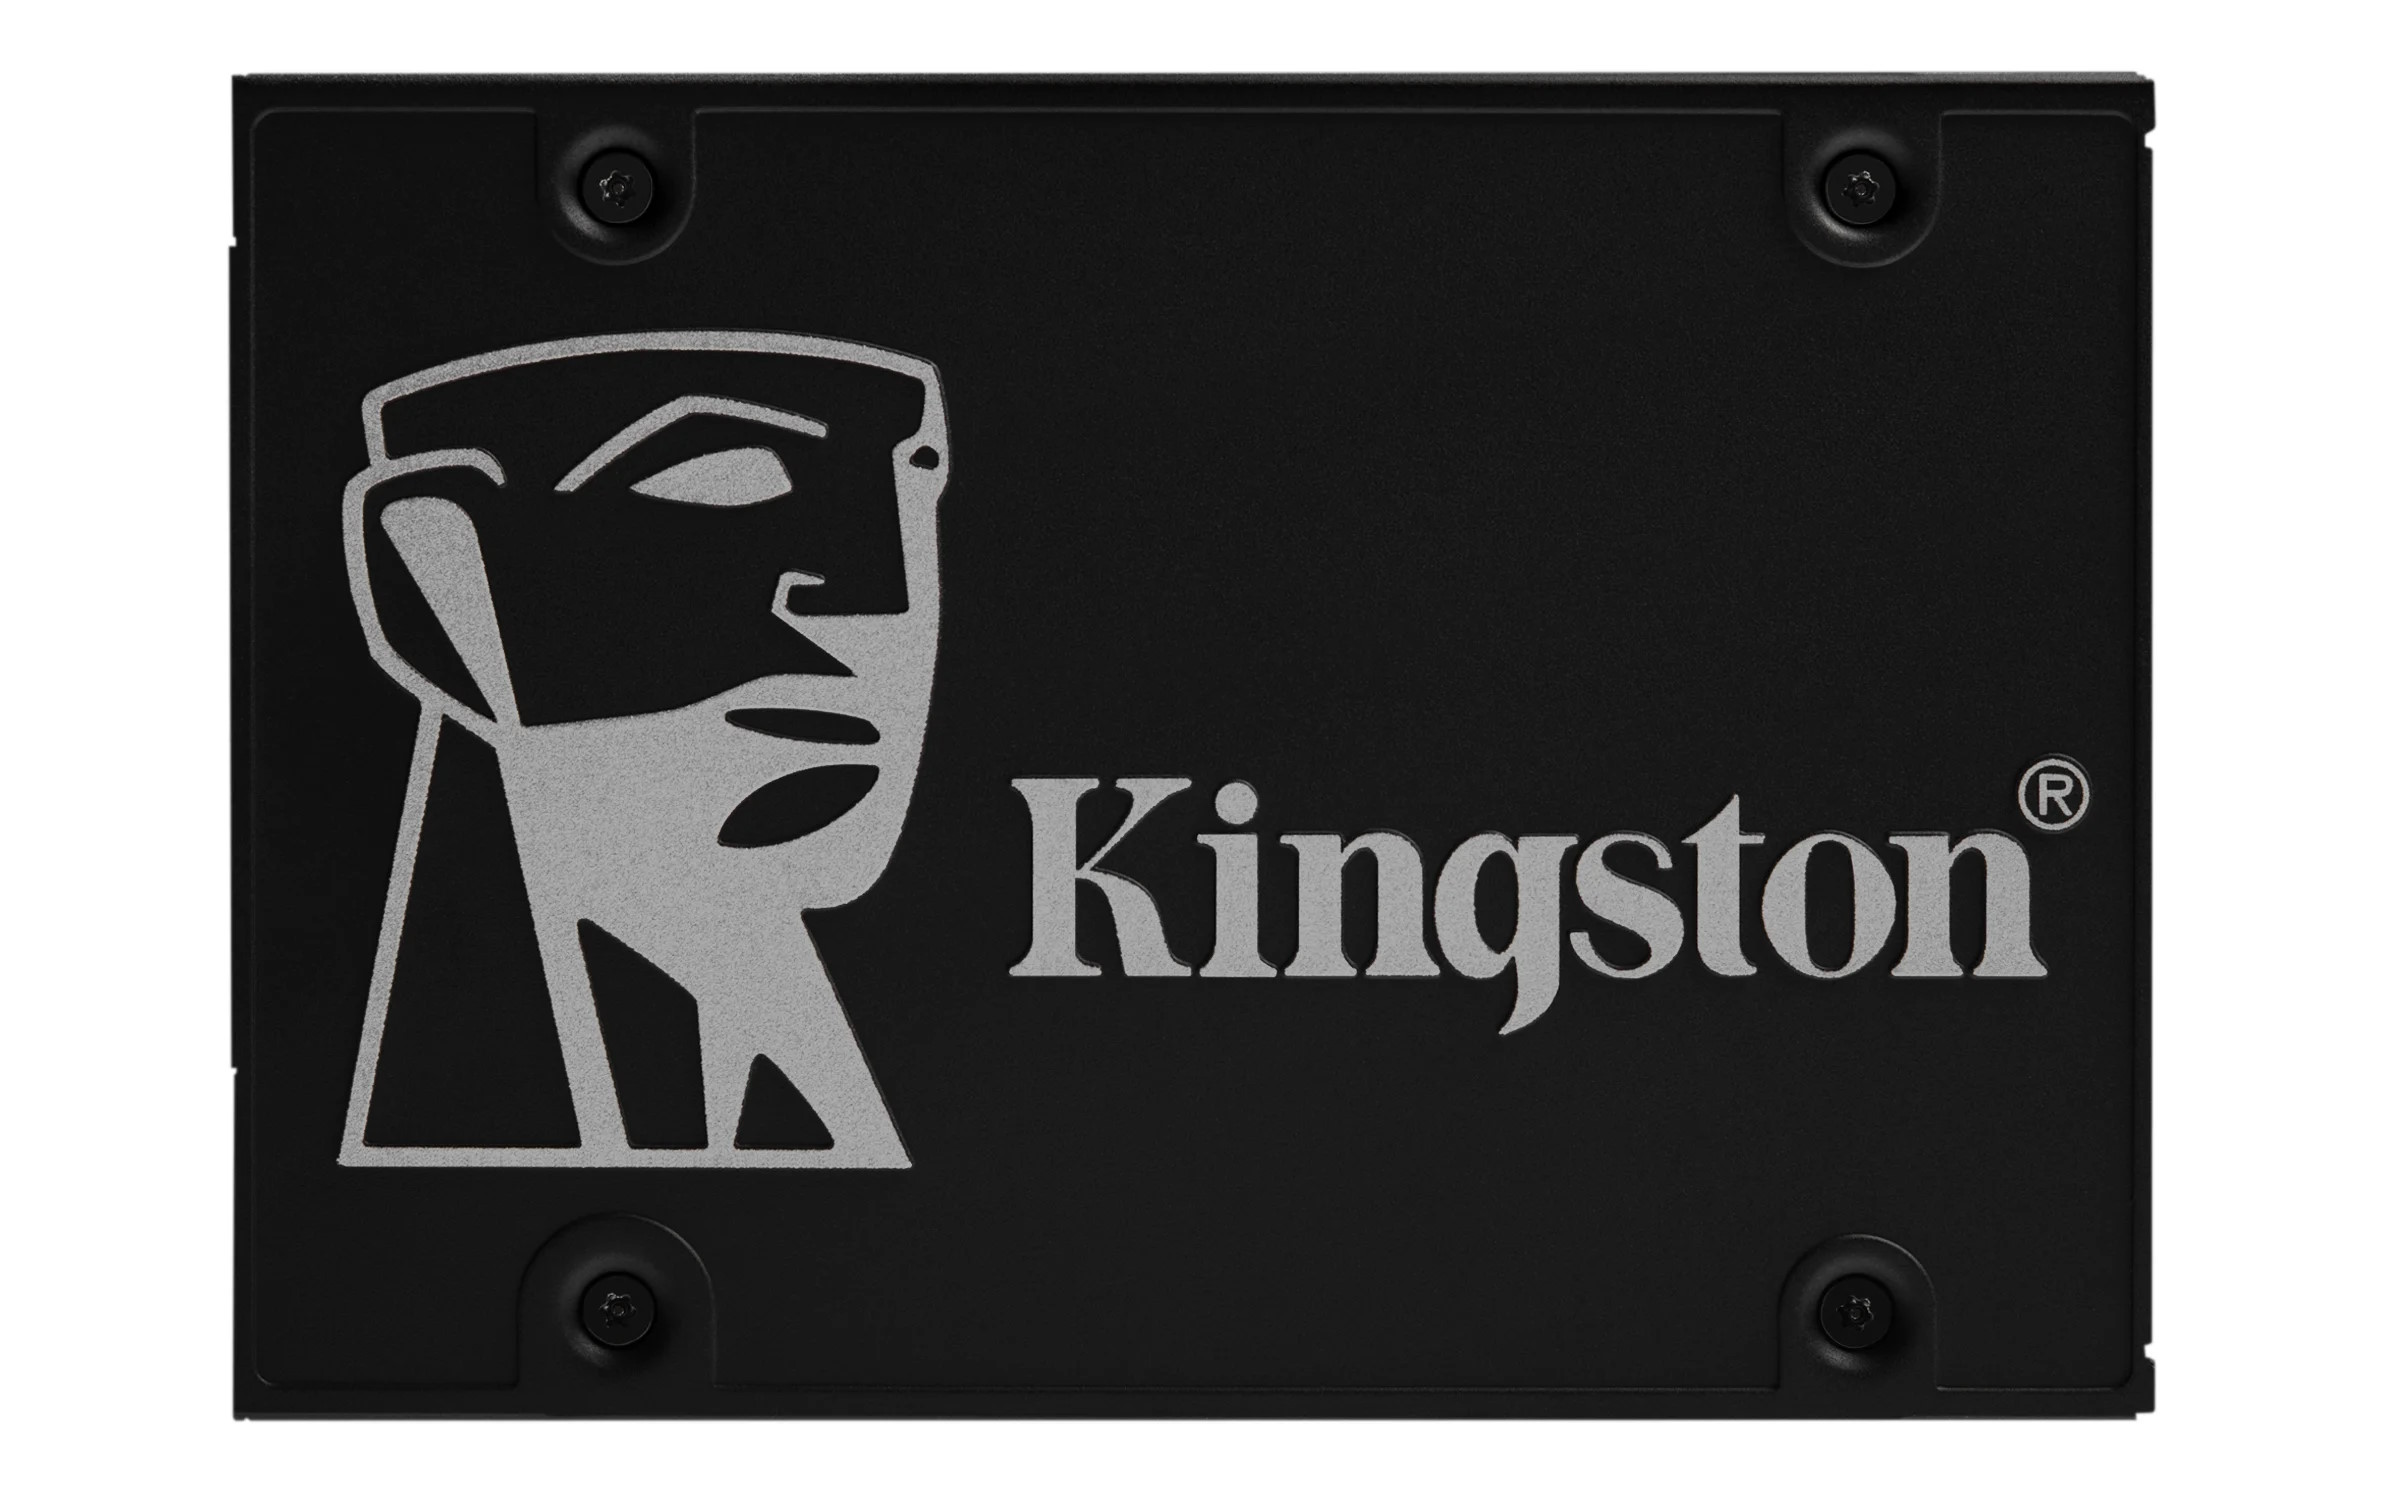 KINGSTON SSD INTERNO KC600 CRITTOGRAFATO 256GB 2.5  SATA 6GB/S